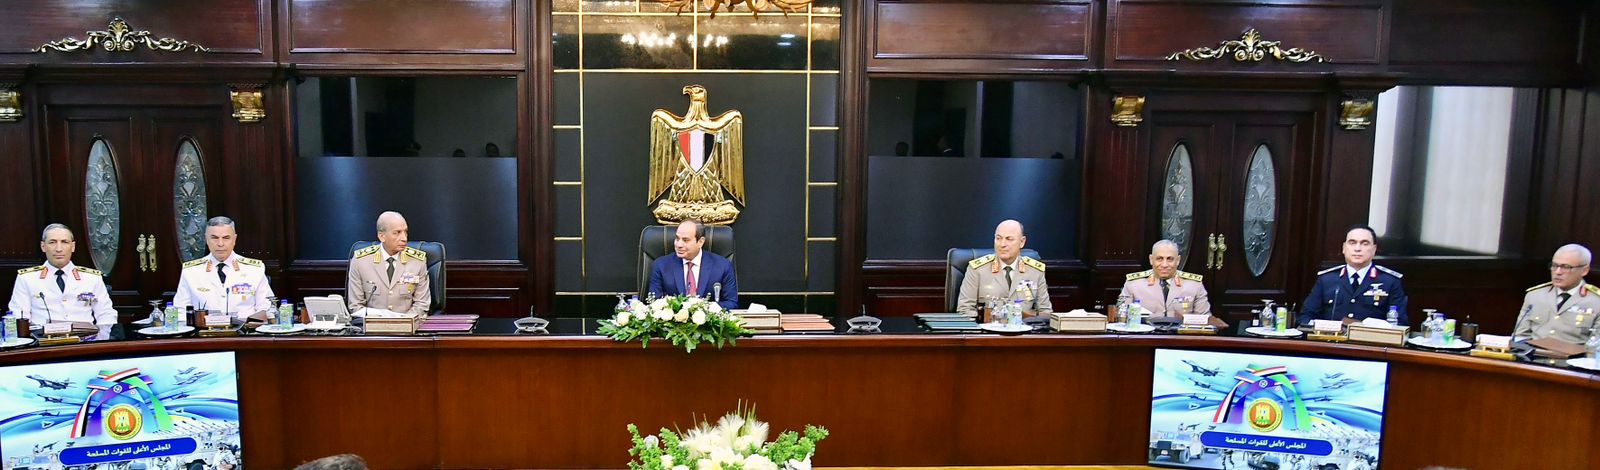 الرئيس السيسي يناقش مهام القوات المسلحة وجهودها في حماية ركائز الأمن القومي المصري